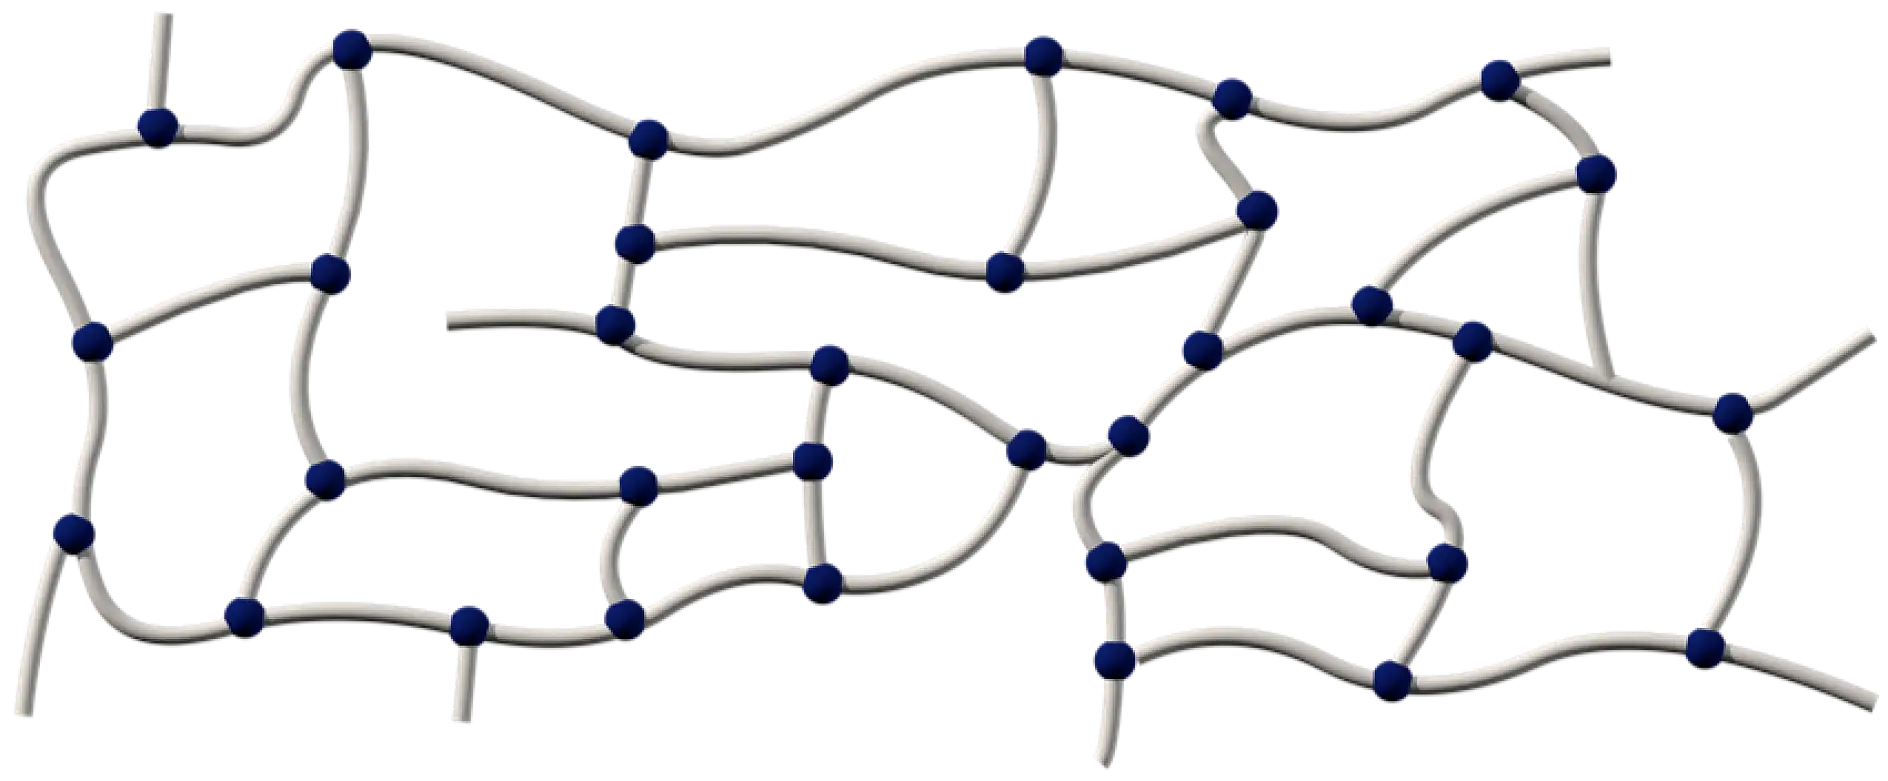 丙烯酸胶粘剂由长链聚合物组成，这些聚合物有许多种交联方式： 化学方式、紫外线辐射方式和电子束硬化方式